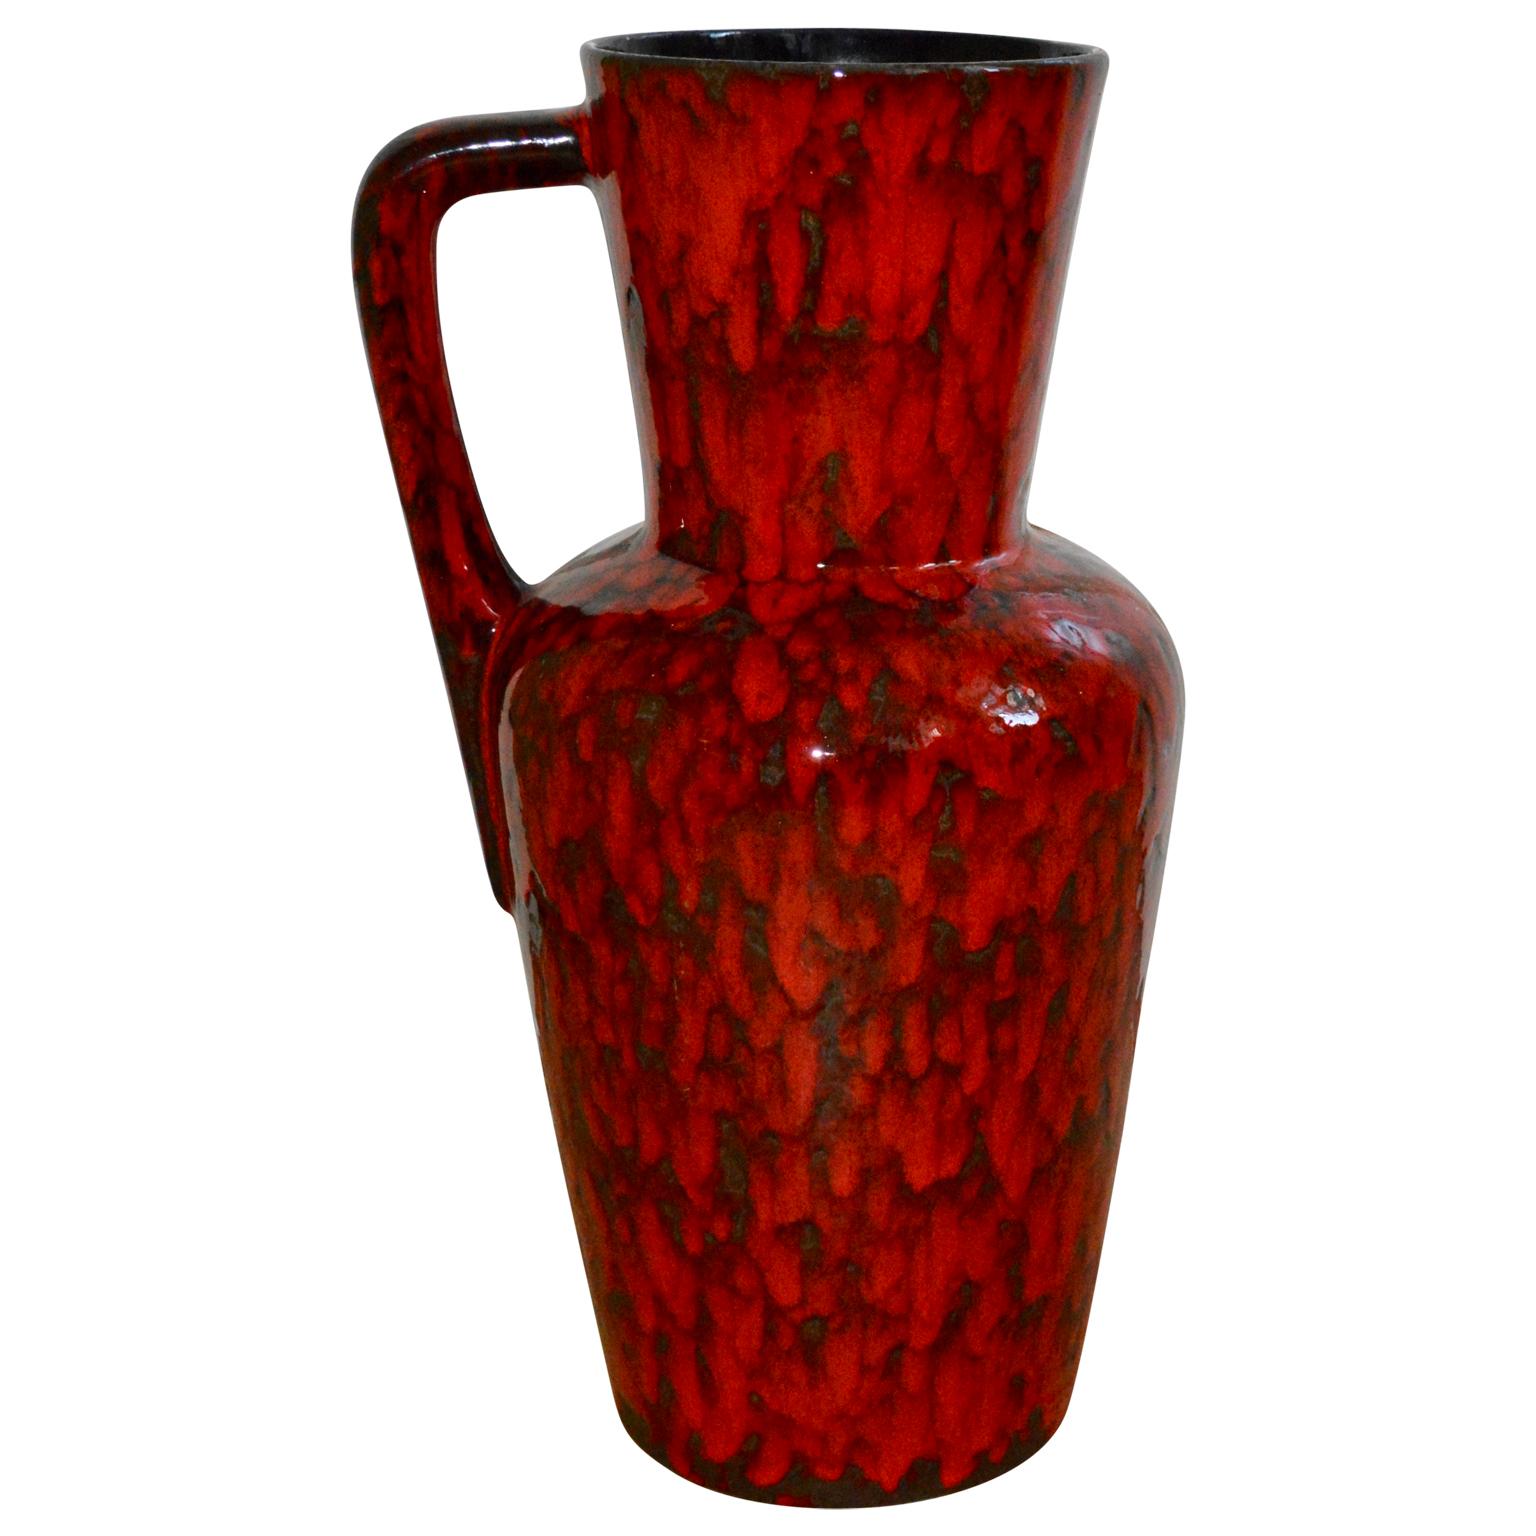 Grand vase de sol du milieu du siècle, en forme de pichet, émaillé de lave rouge. Le vase est numéroté et attribué à Scheurich Keramik.